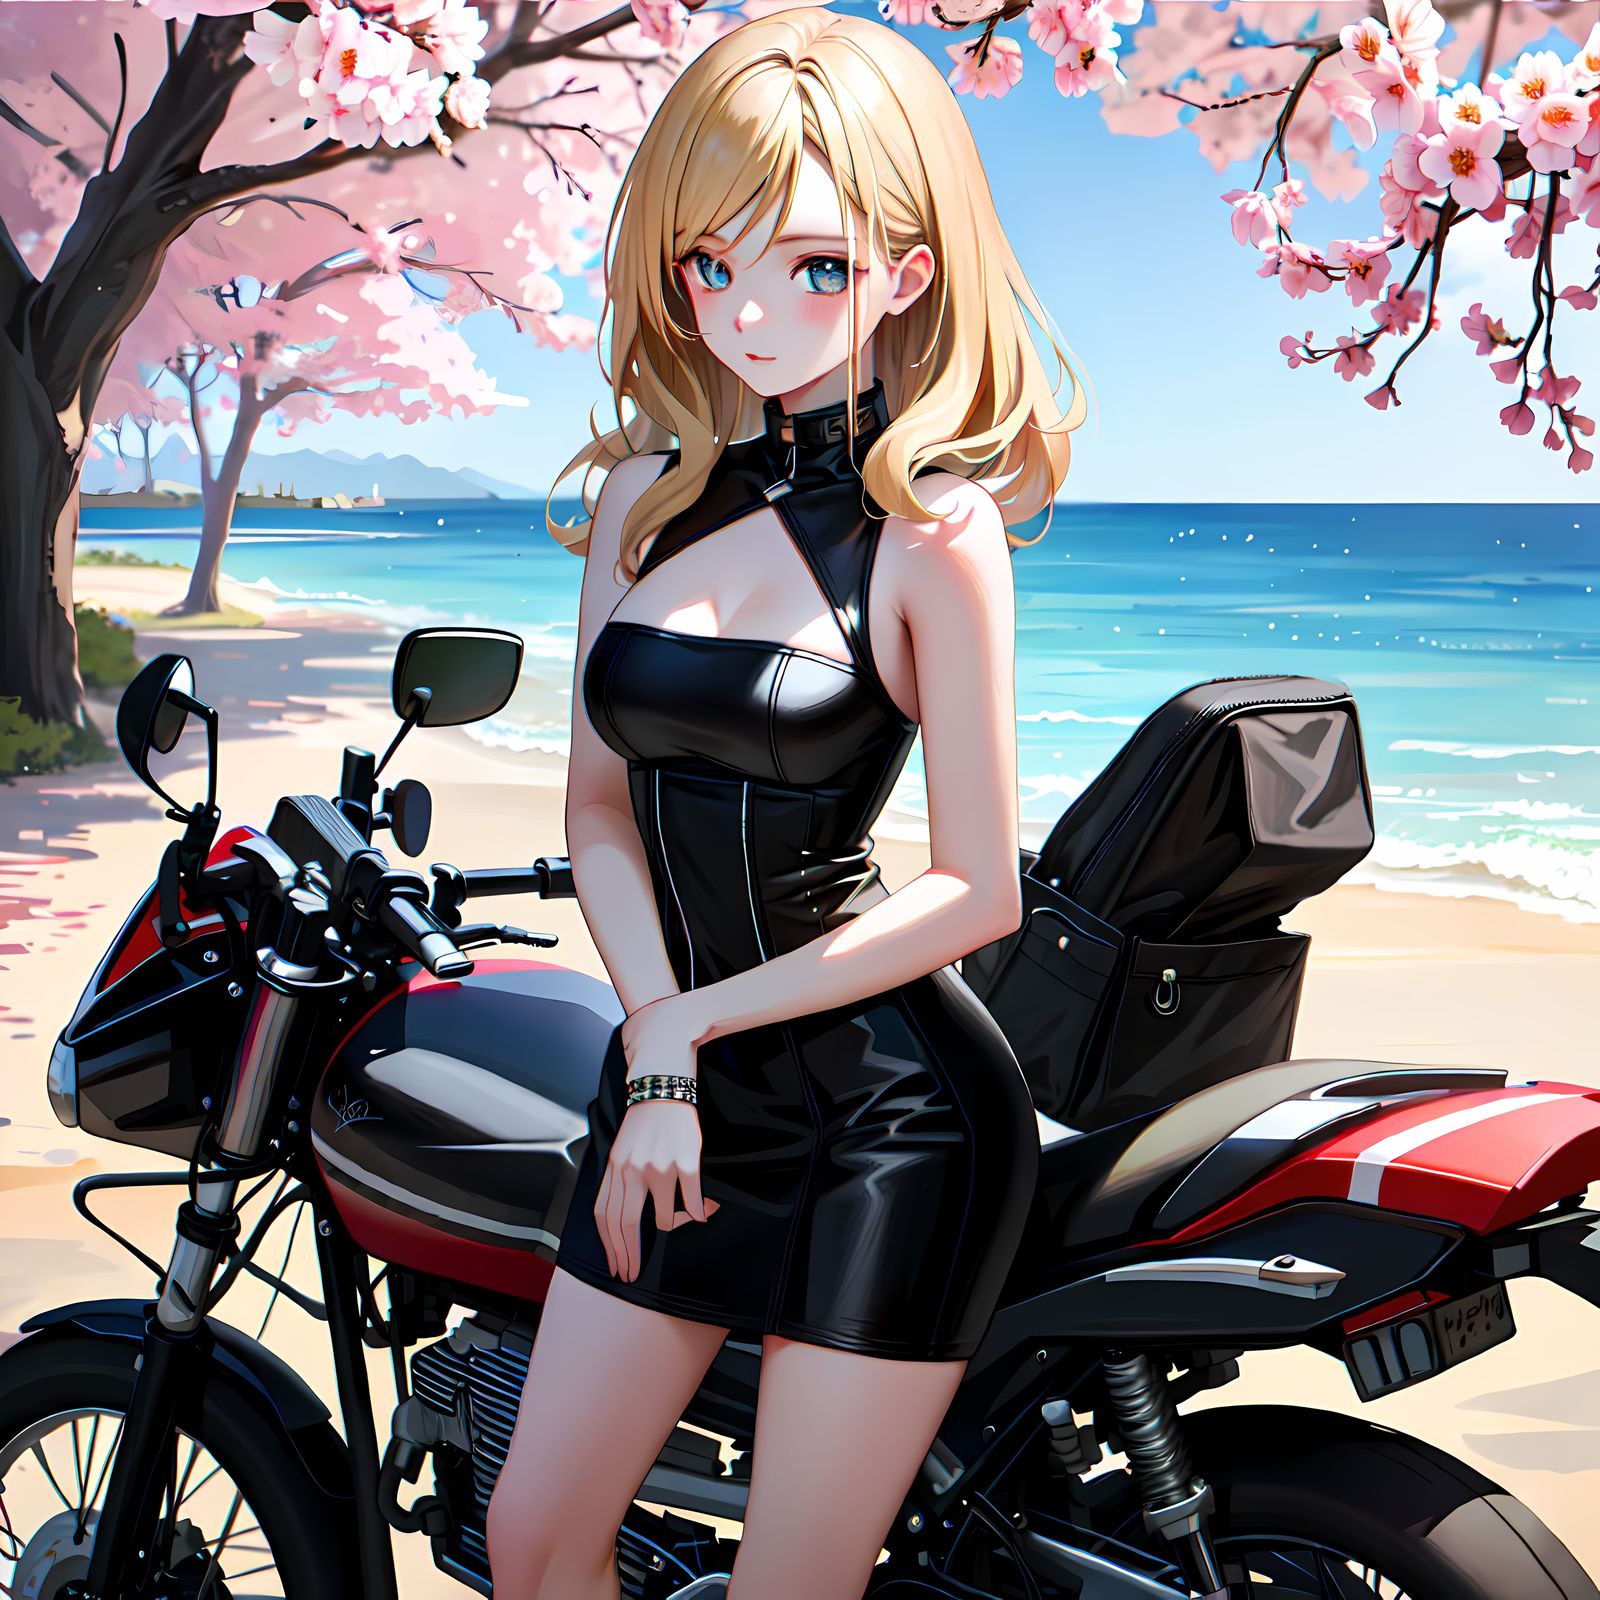 骑车追樱-日系唯美人像插画的相关标签:人物